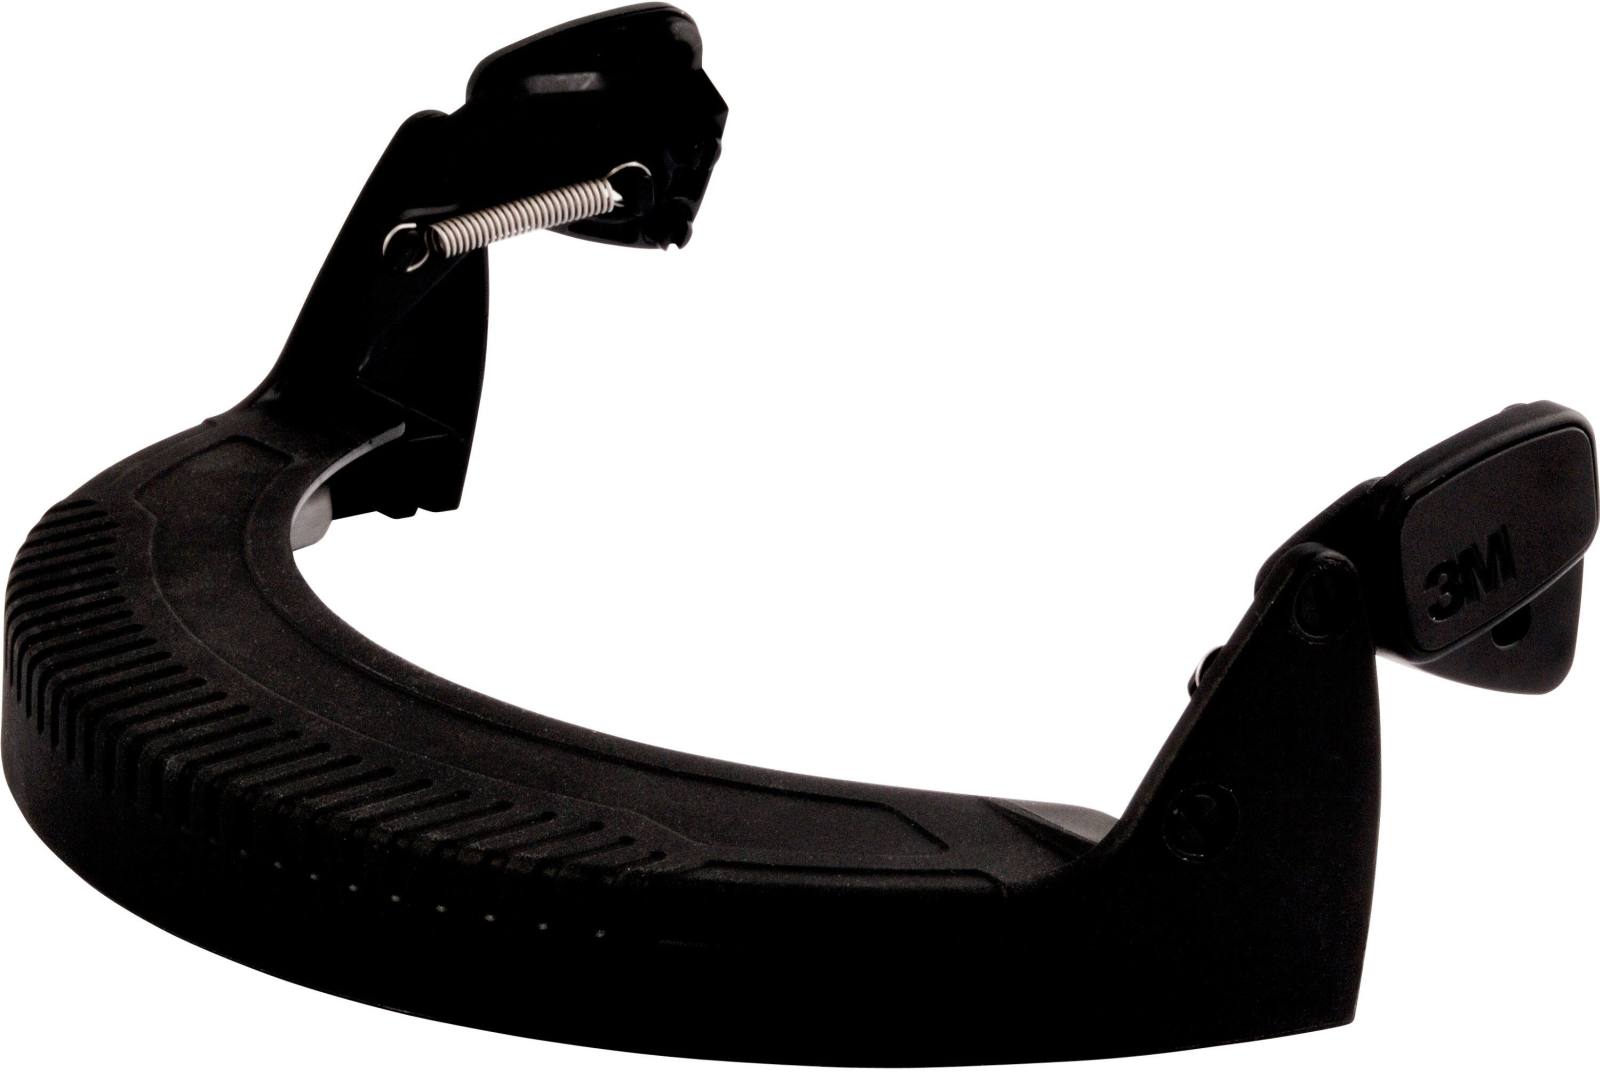 3M visor holder V5 holder for safety helmet G22 and G3000 for attaching 5* visors to safety helmet / 3M visor holder for 3M™ safety helmets, FH1